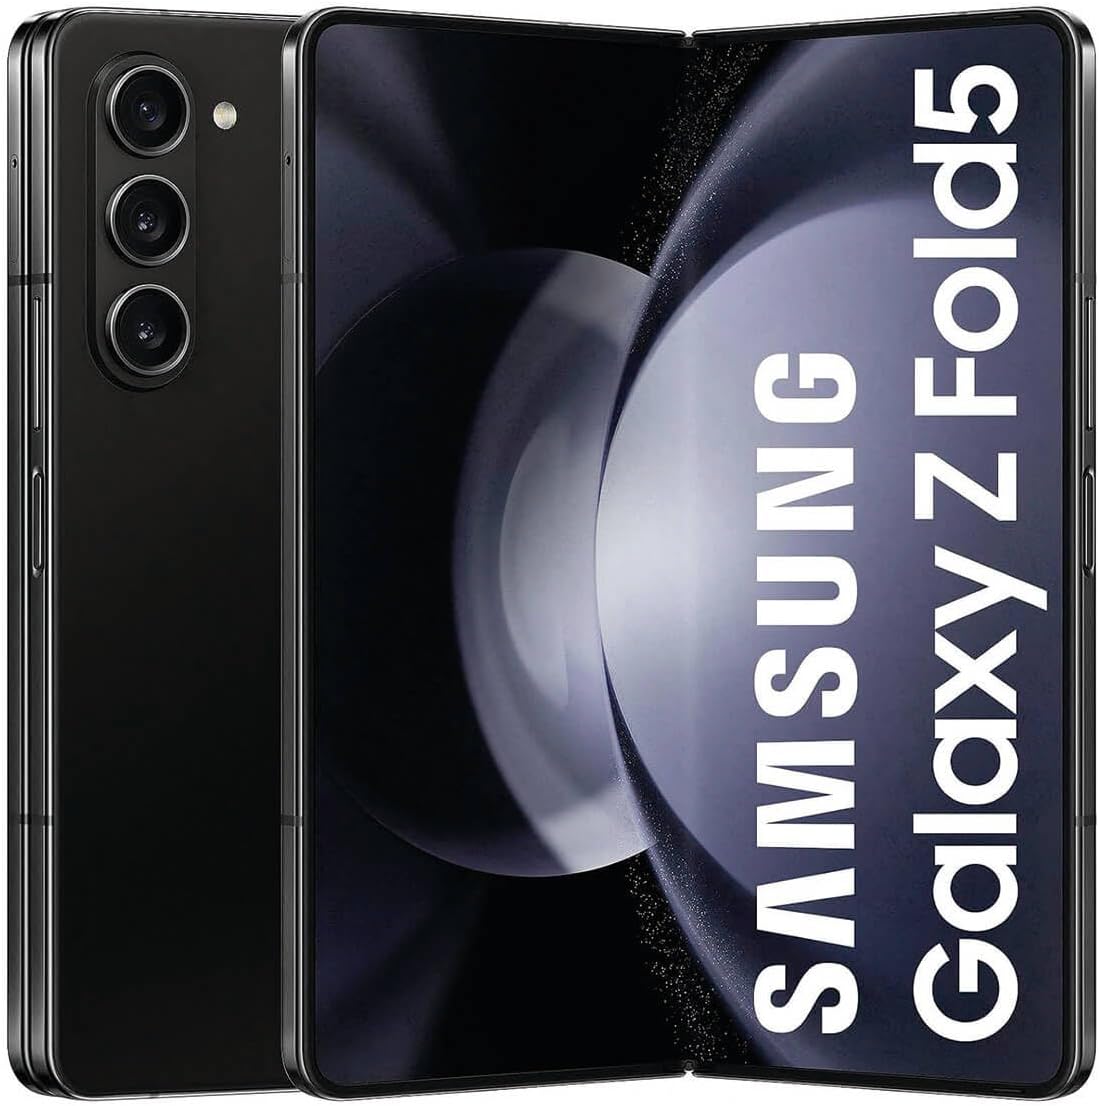 Samsung Galaxy Z Fold 5